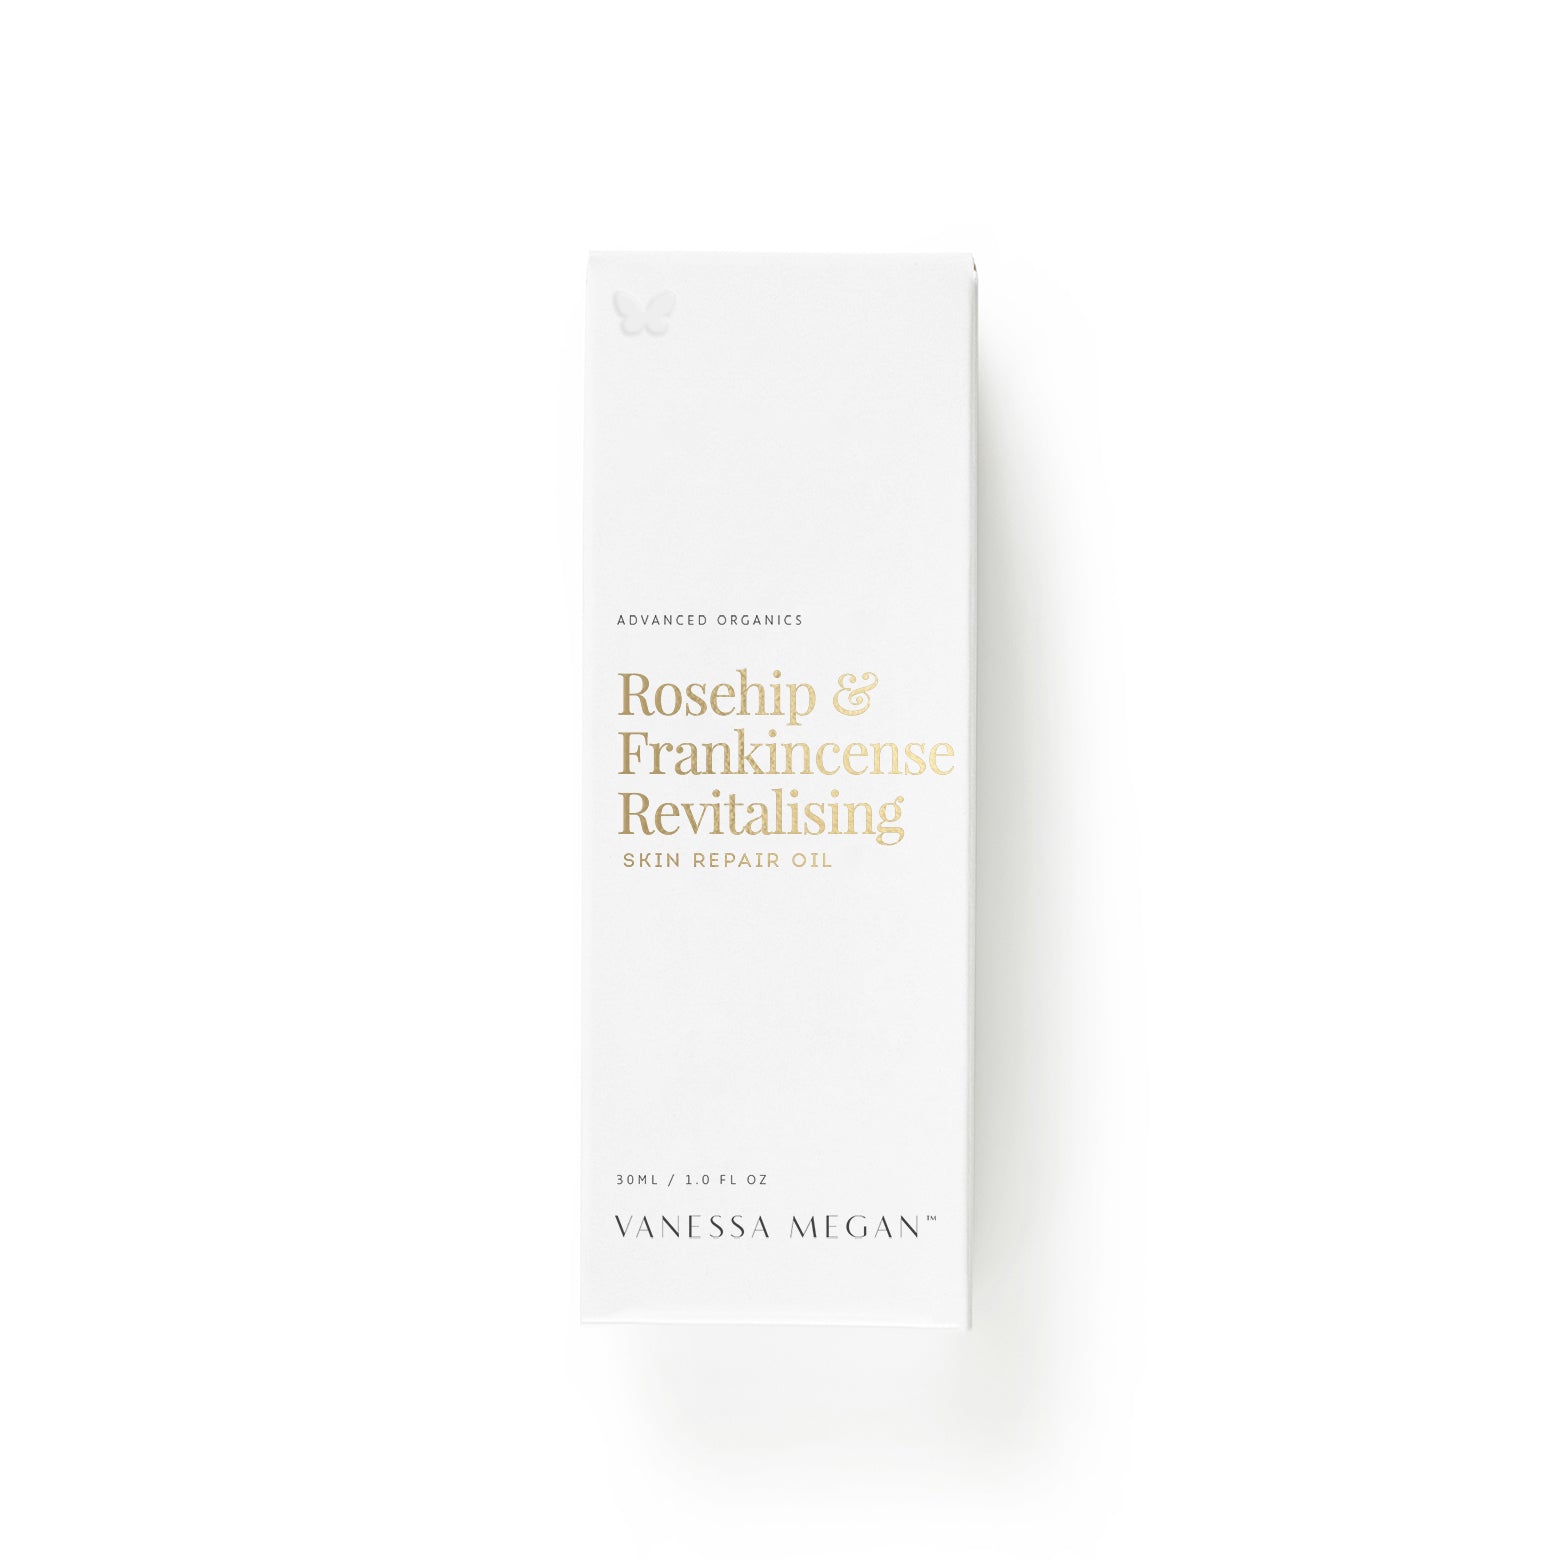 Rosehip & Frankincense Revitalising | Skin Repair Oil | 30ml